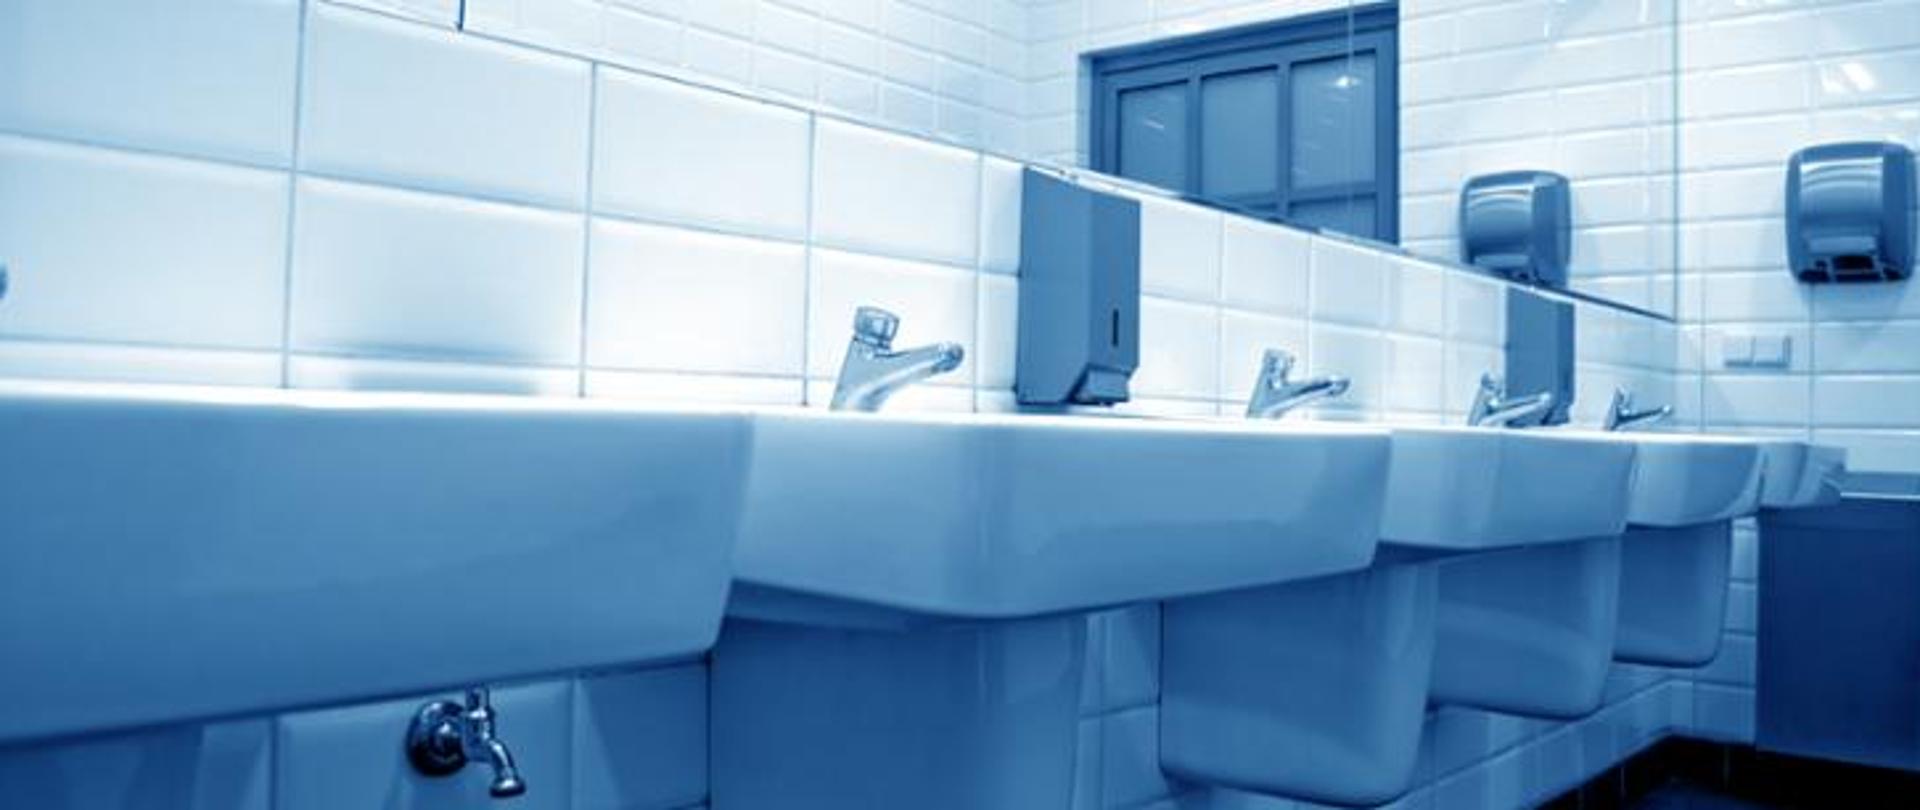 Zdjęcie przedstawia umywalki w toalecie